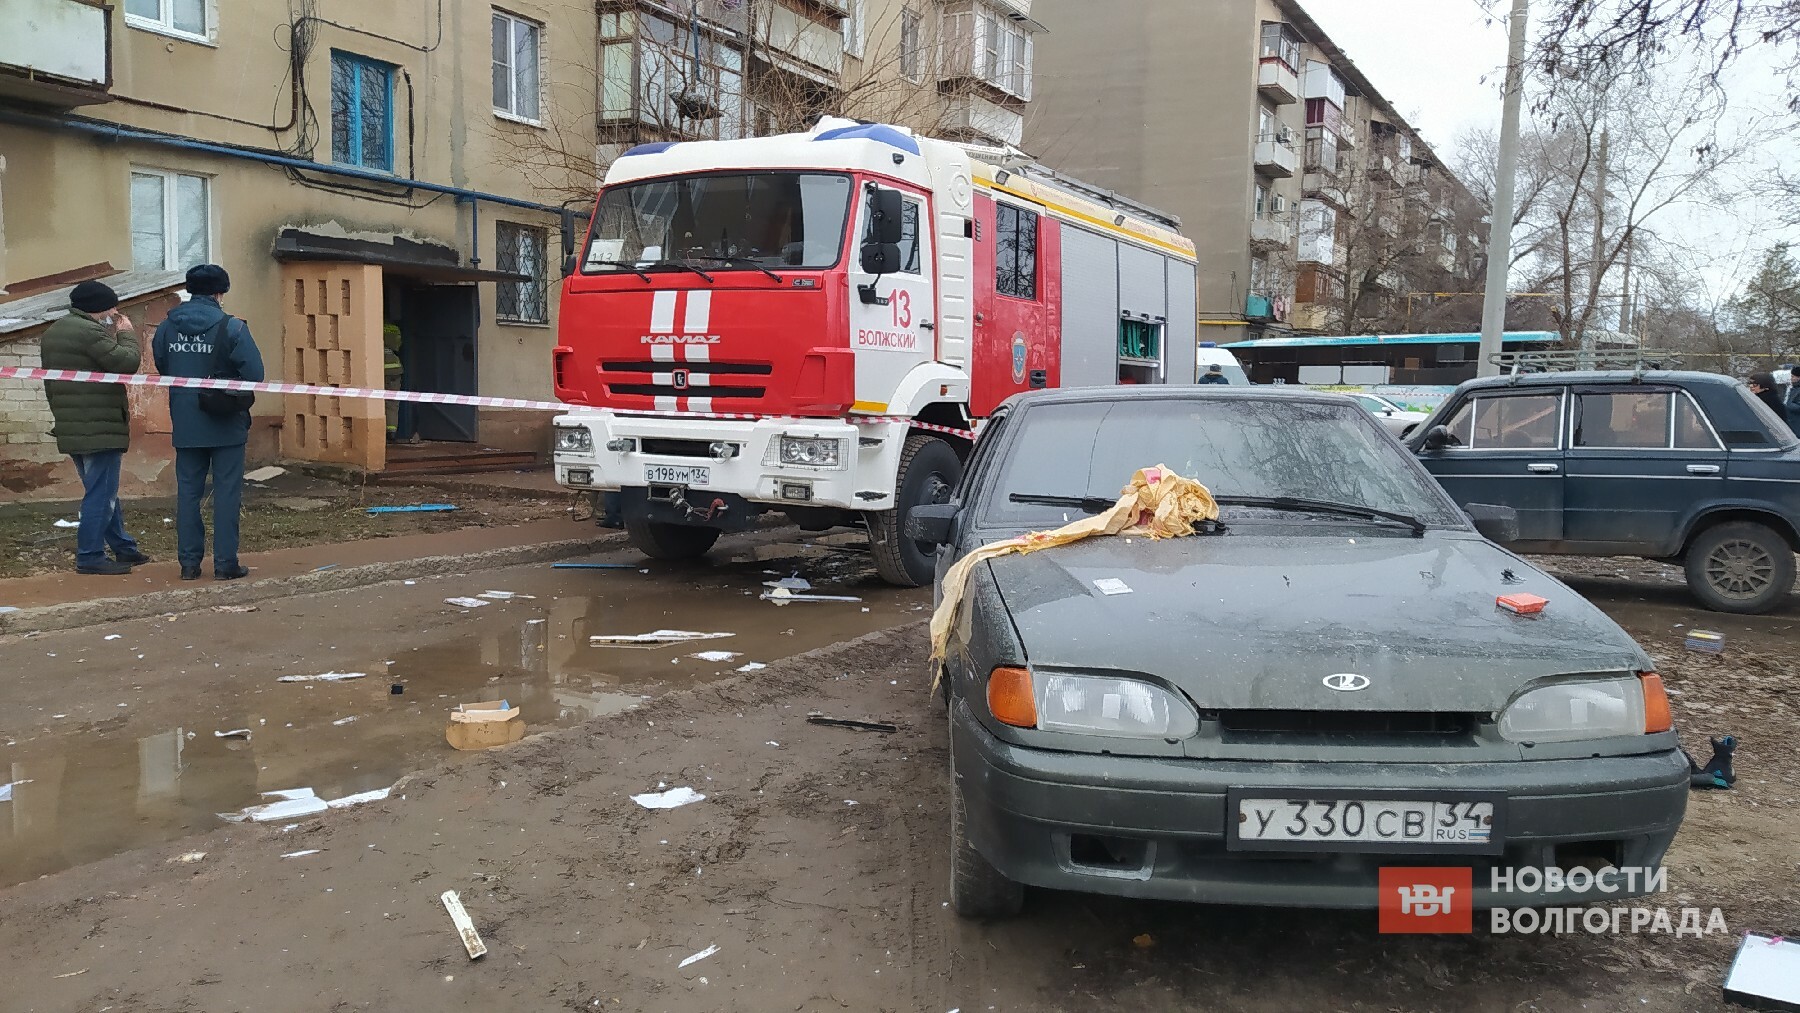 Пожар в жилом доме произошел в Волжском из-за неисправного газового оборудования